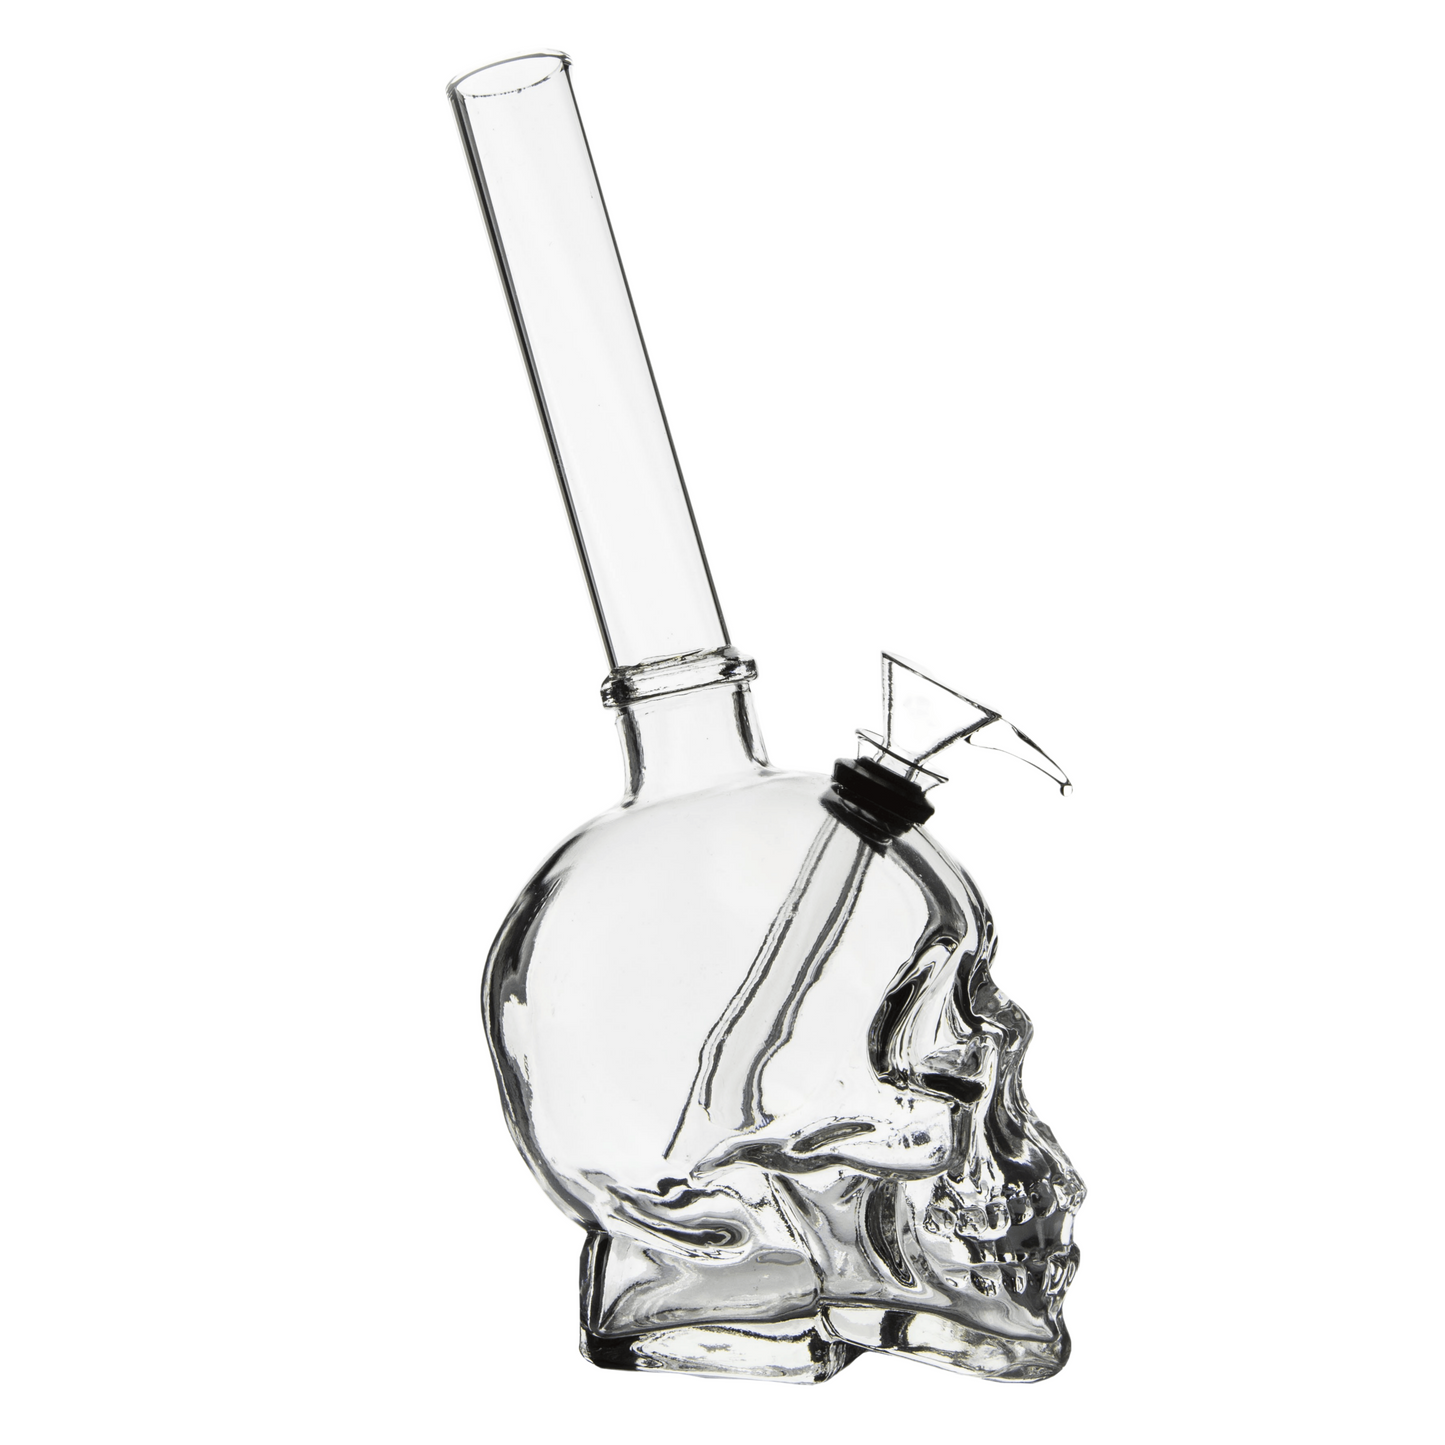 Medium Skull Glass bong